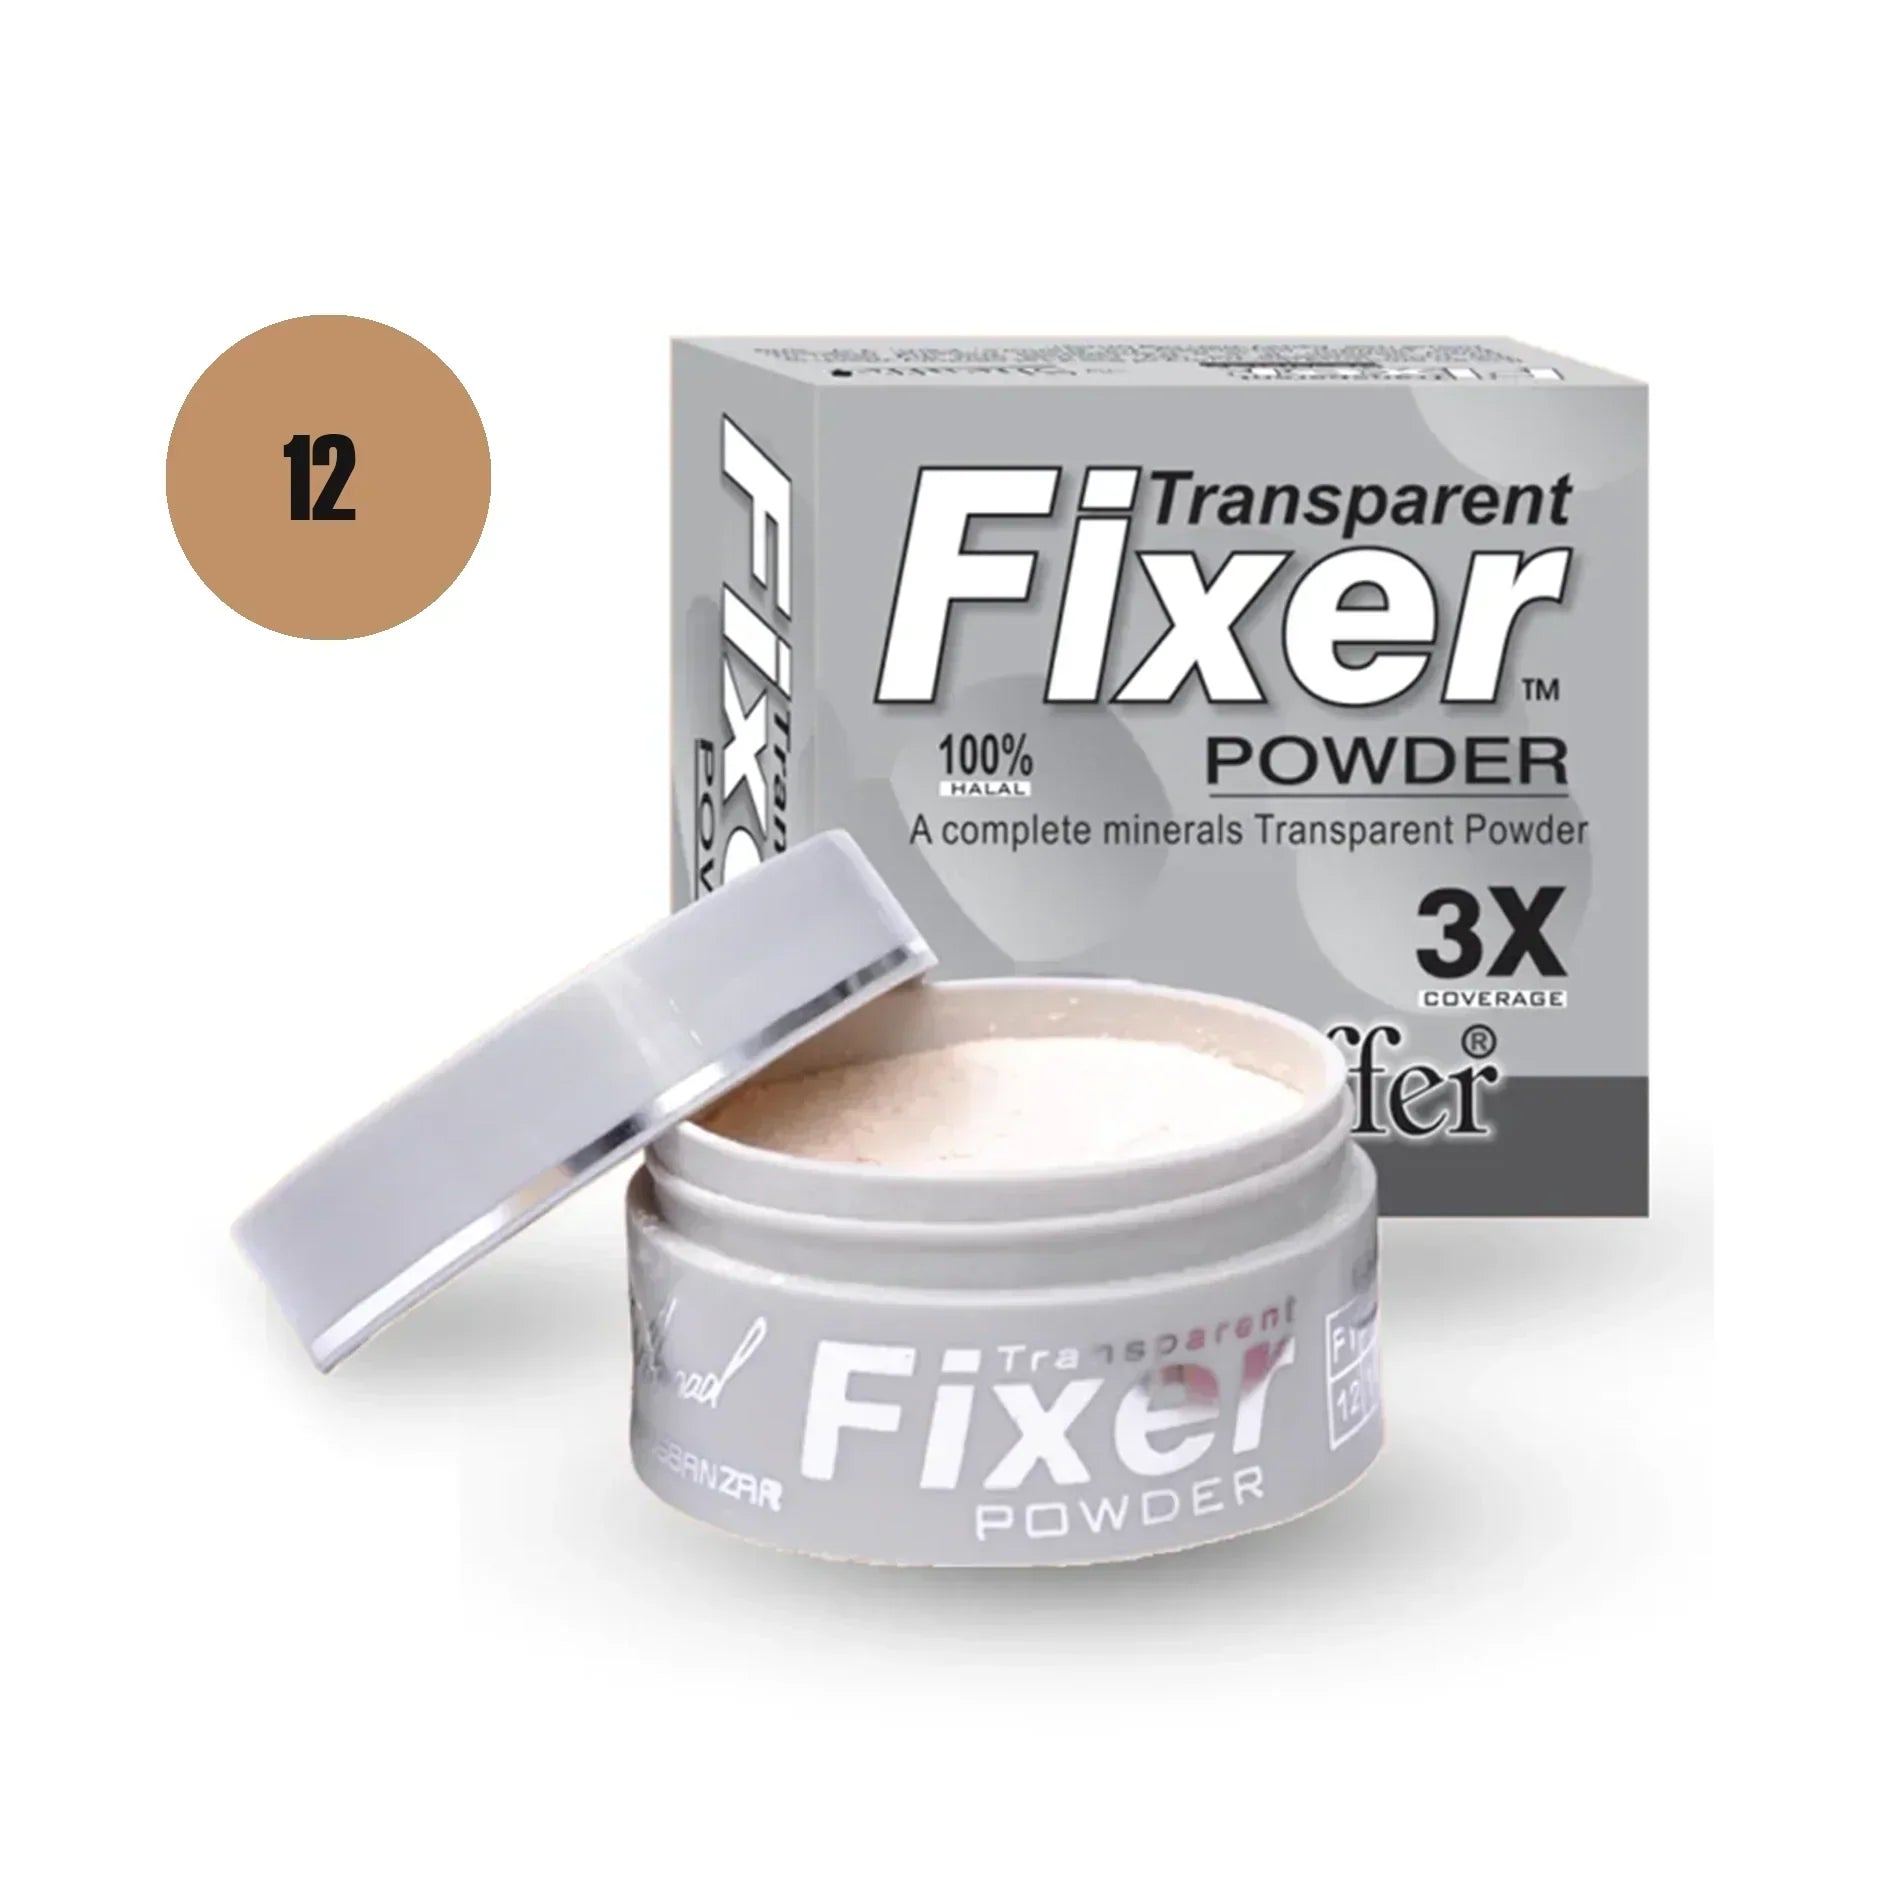 Sheaffer Transparent Fixer Powder Shade No 10 - Retailershop - Online Shopping Center